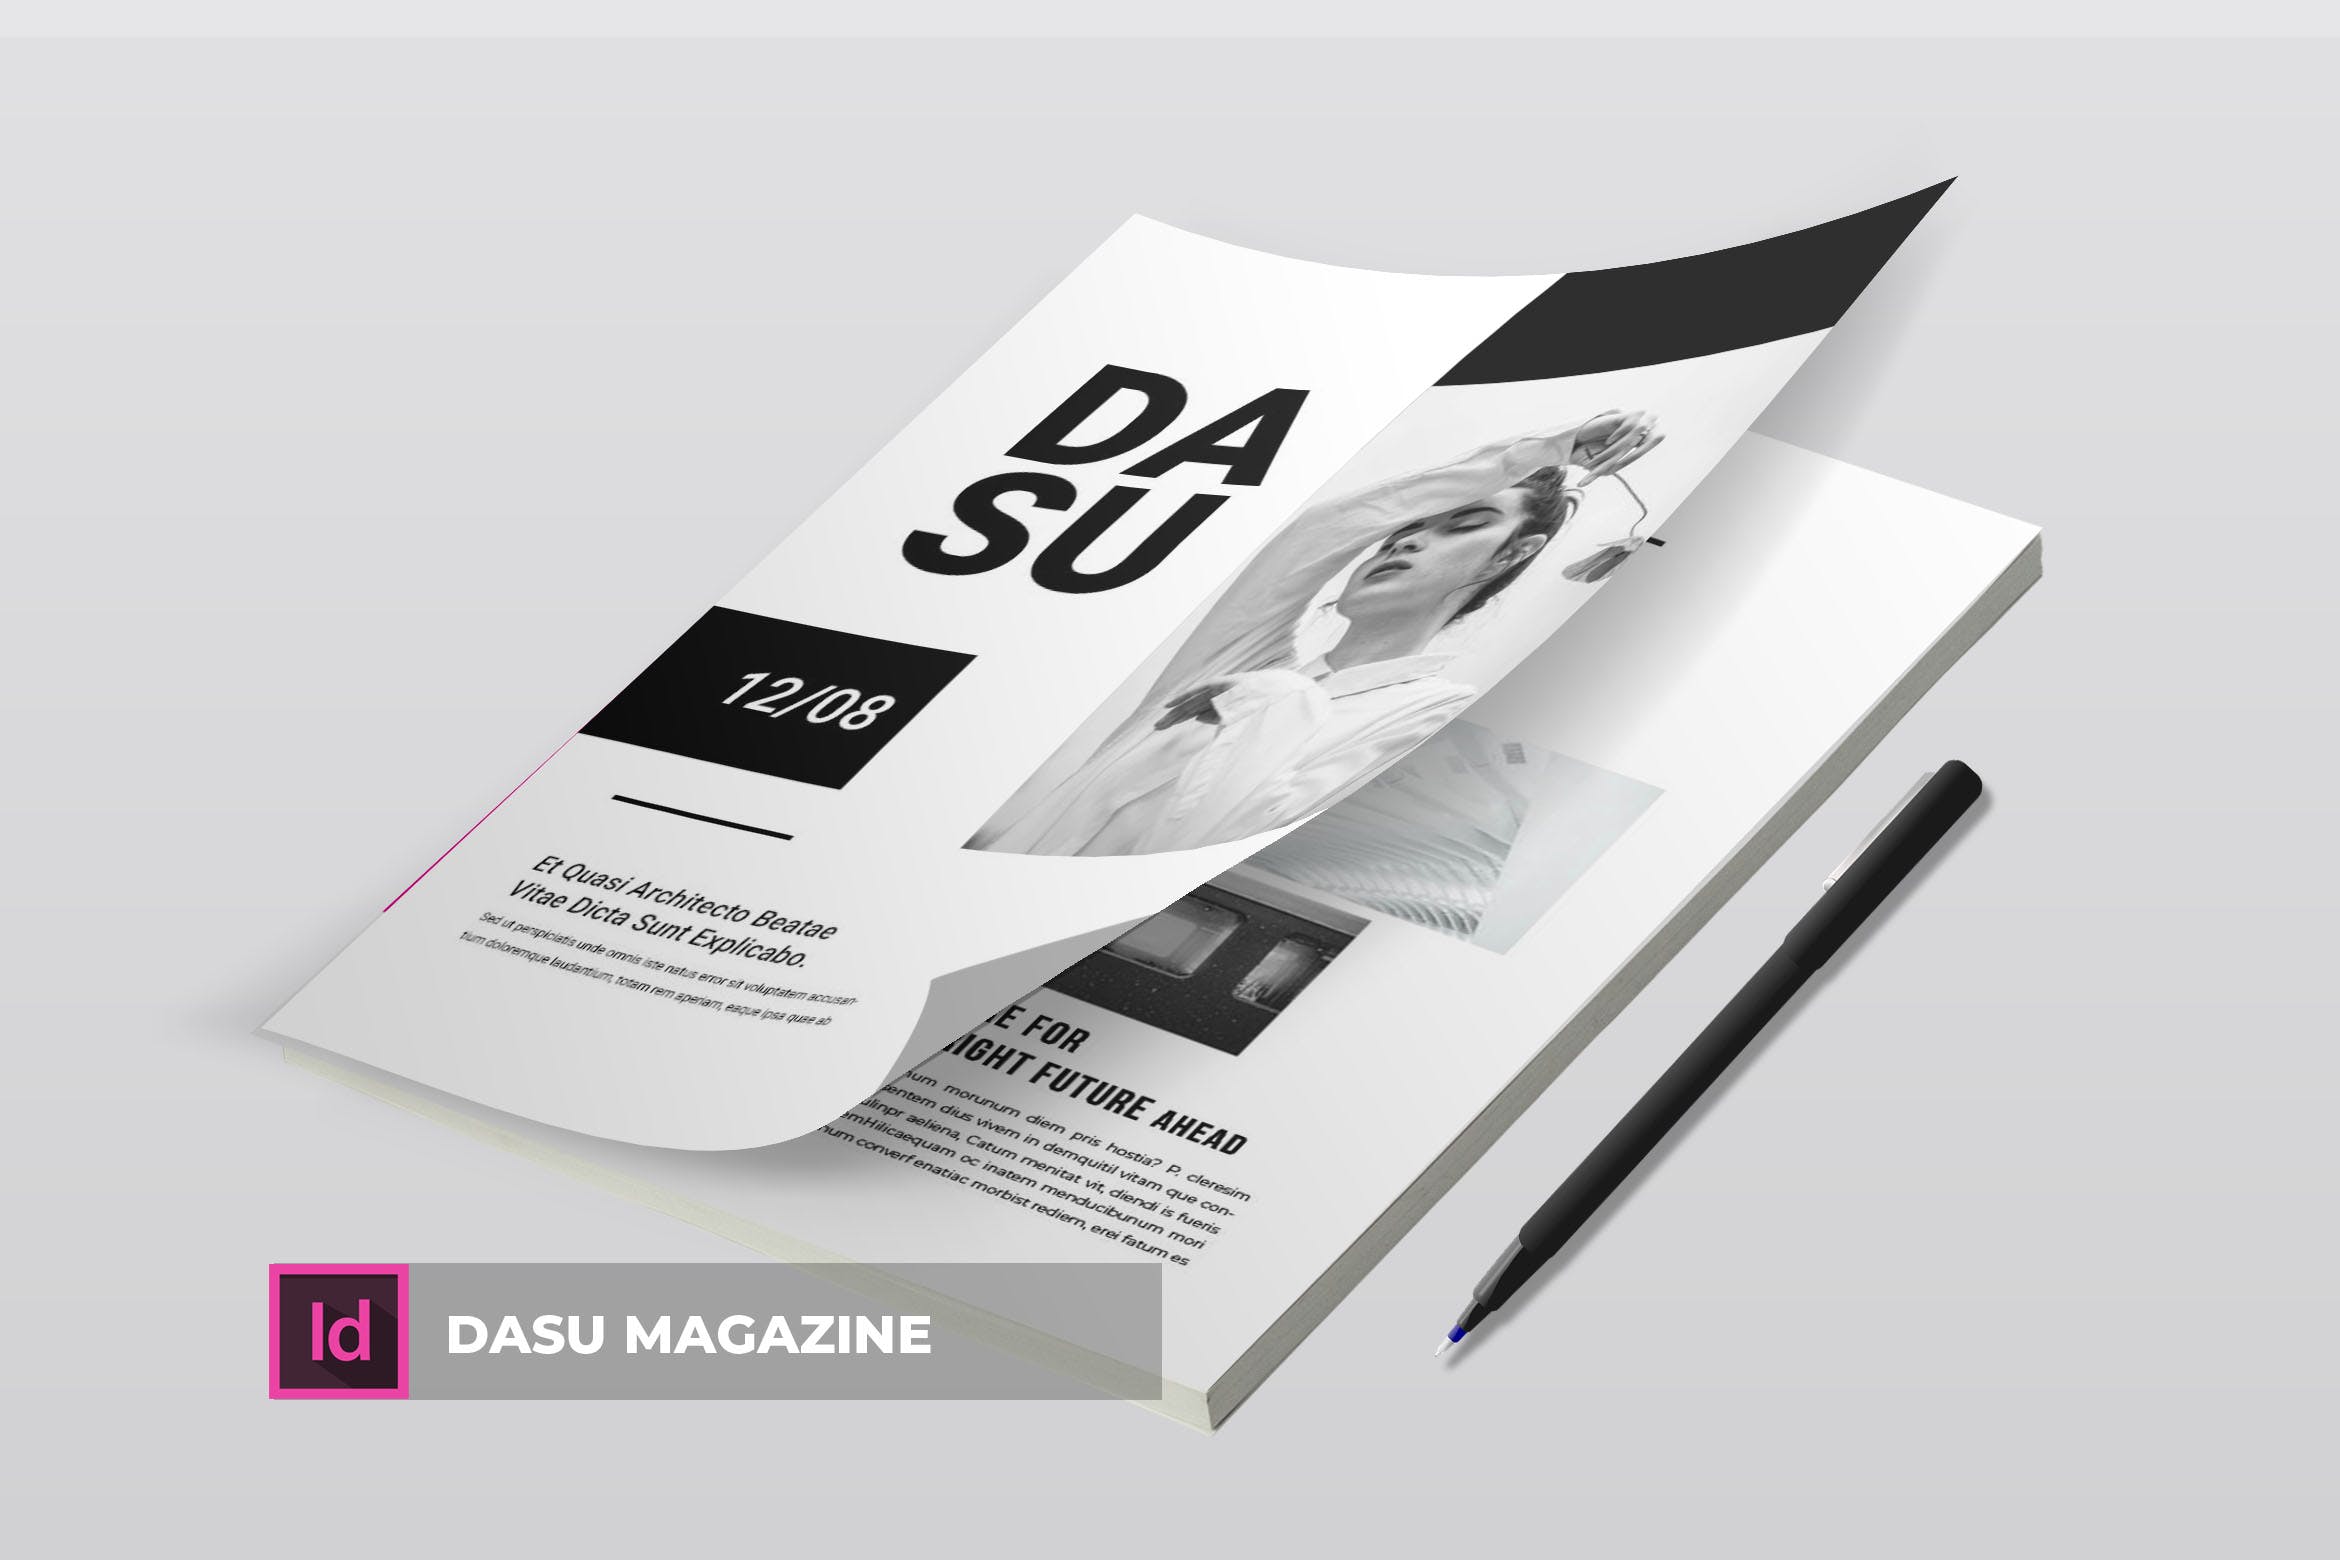 摄影艺术/时装设计主题16图库精选杂志排版设计模板 Dasu | Magazine Template插图